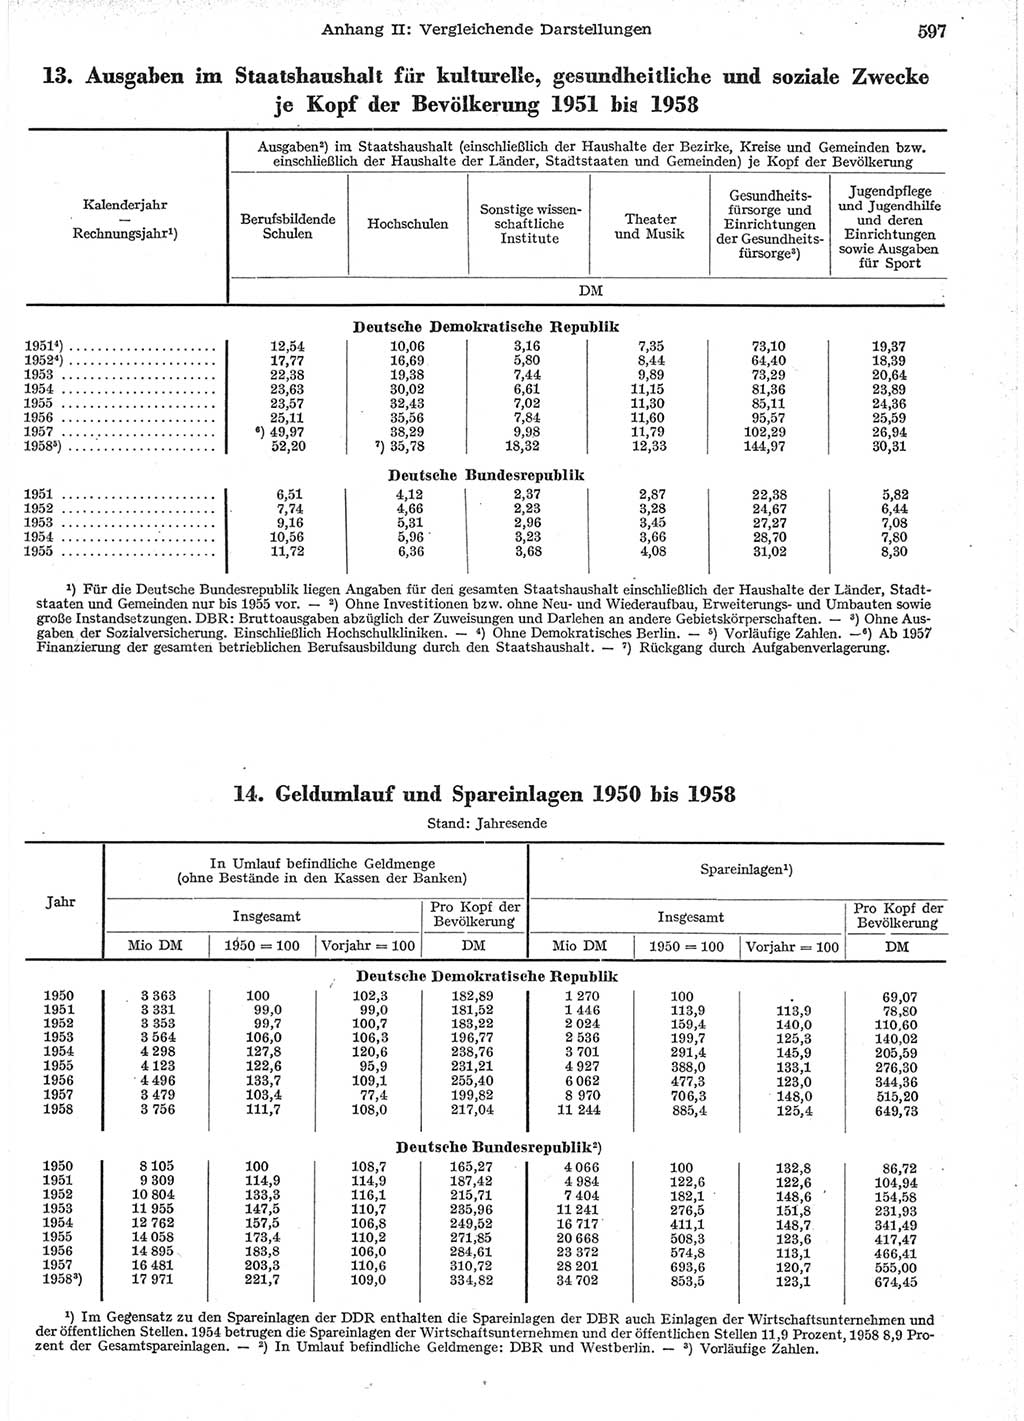 Statistisches Jahrbuch der Deutschen Demokratischen Republik (DDR) 1958, Seite 597 (Stat. Jb. DDR 1958, S. 597)